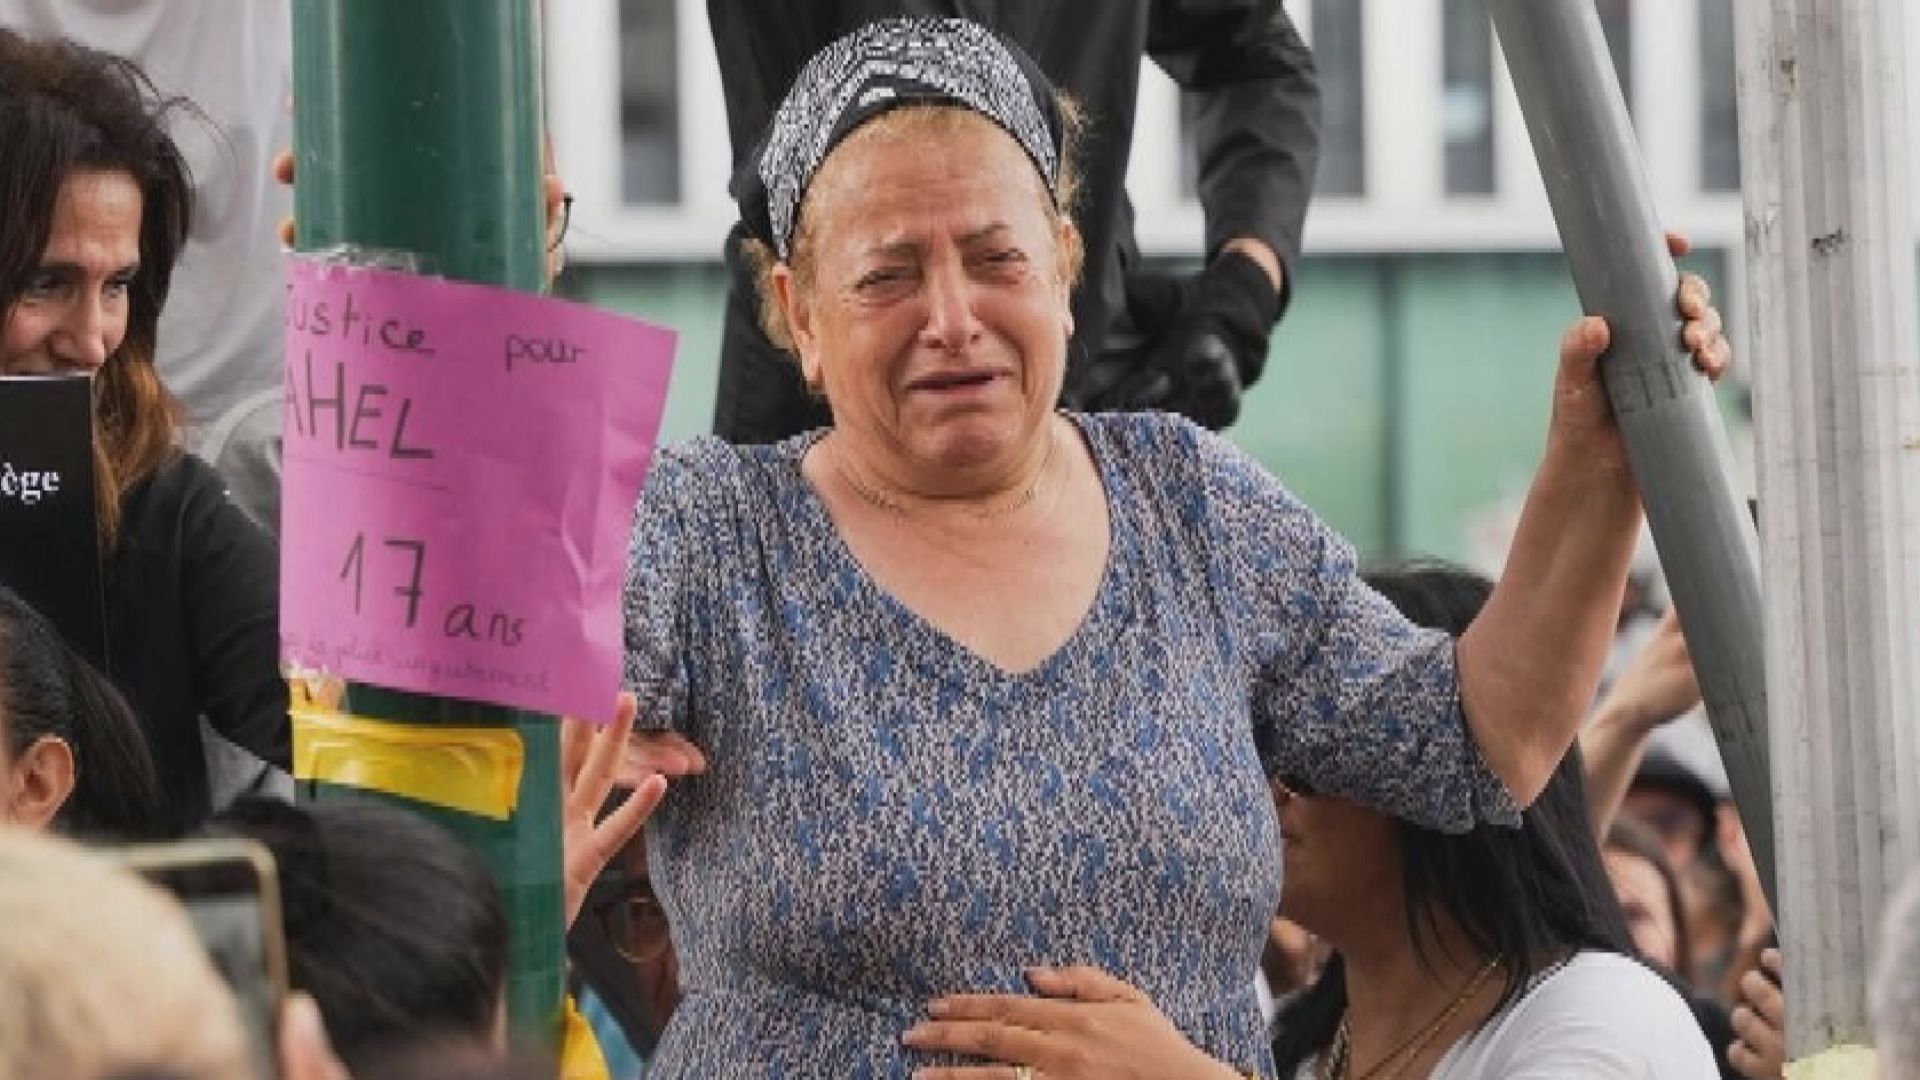 法國被射殺青年的外婆接受訪問 呼籲停止騷亂